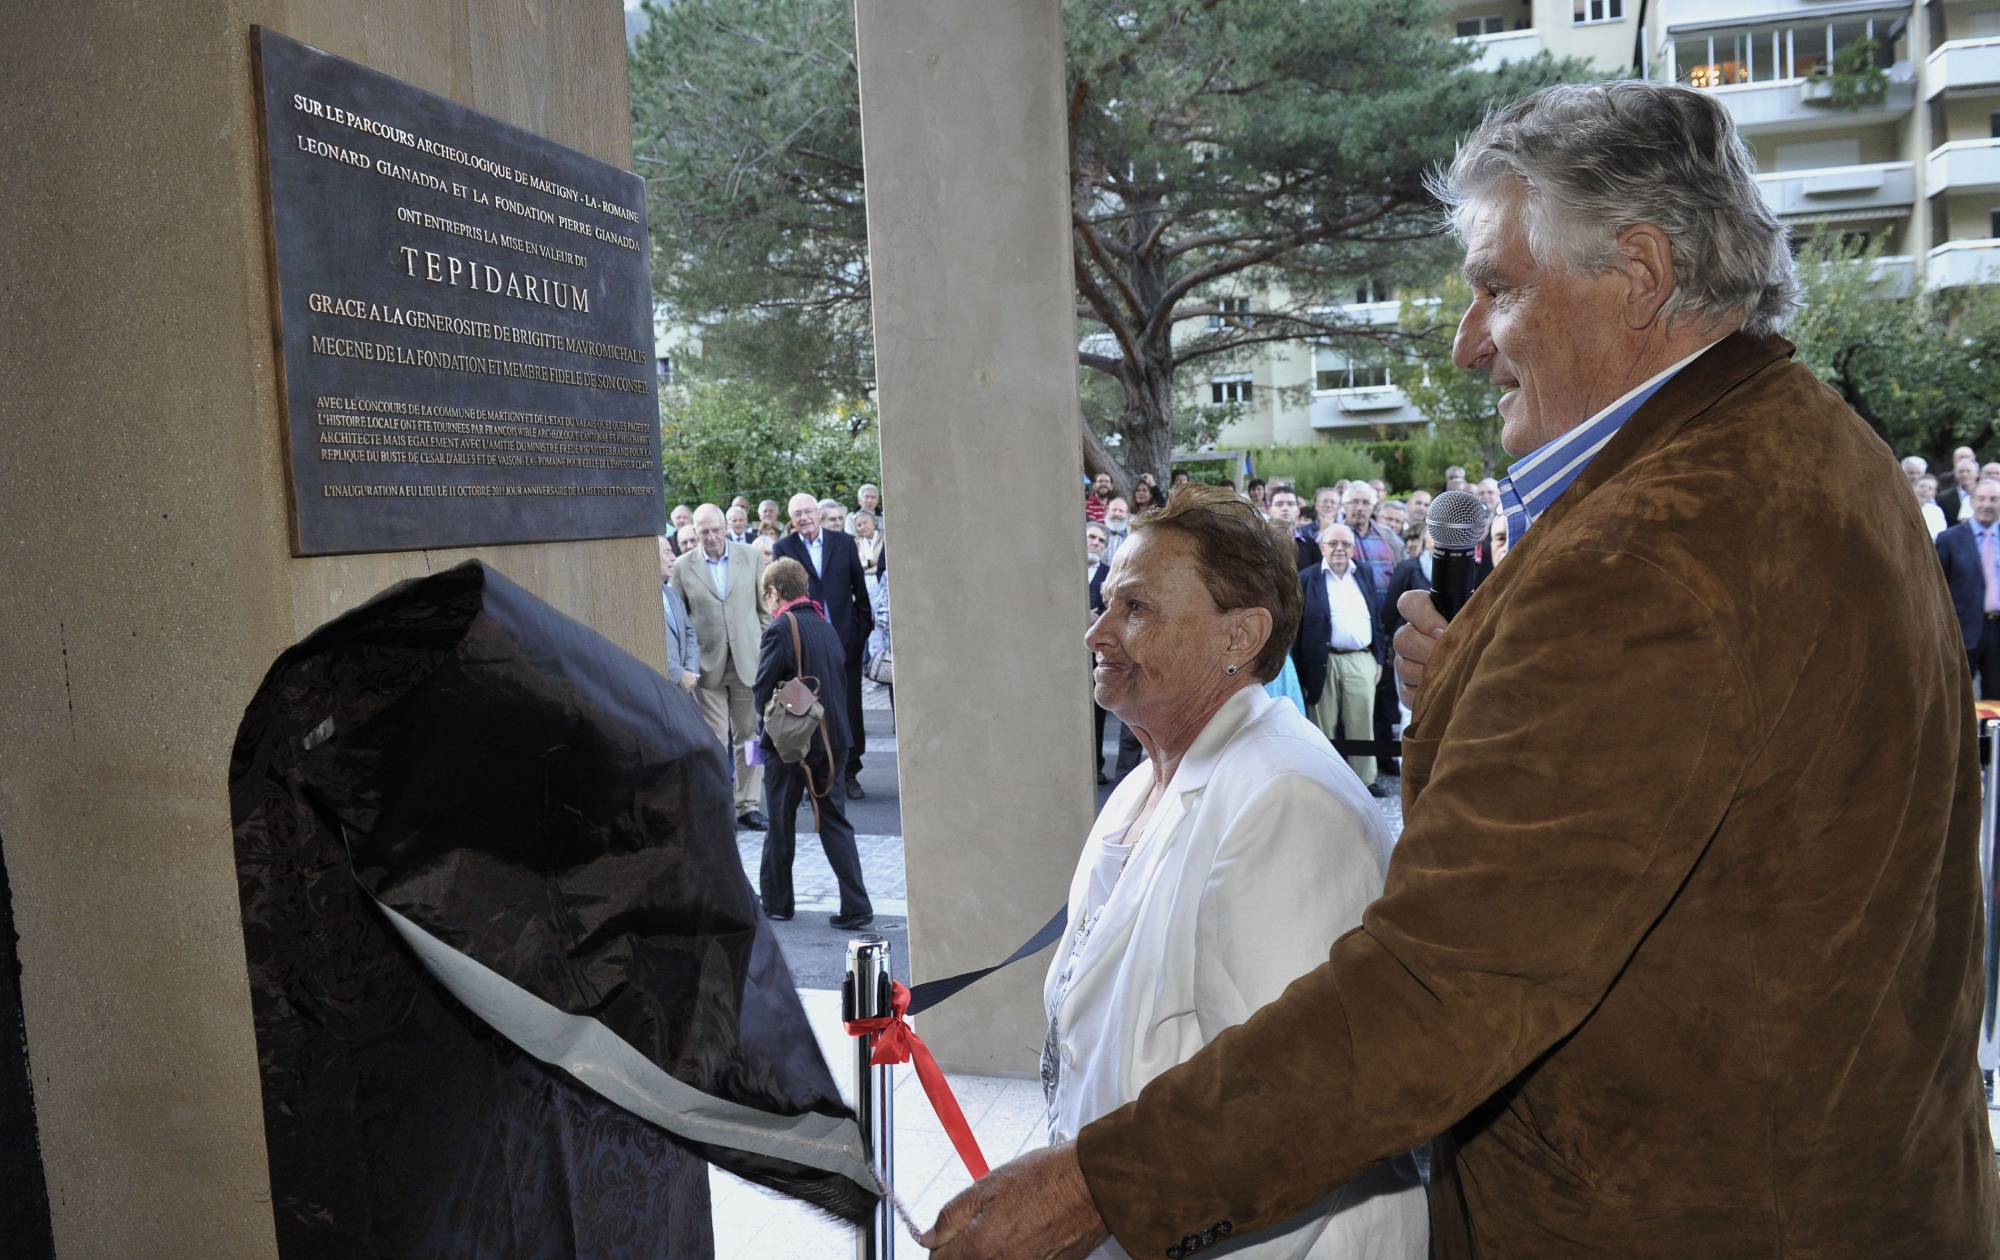 Accompagnée de Léonard Gianadda, la mécène Brigitte Mavromichalis a inauguré en octobre 2011 le Tepidarium de Martigny, remis en valeur grâce à sa générosité.